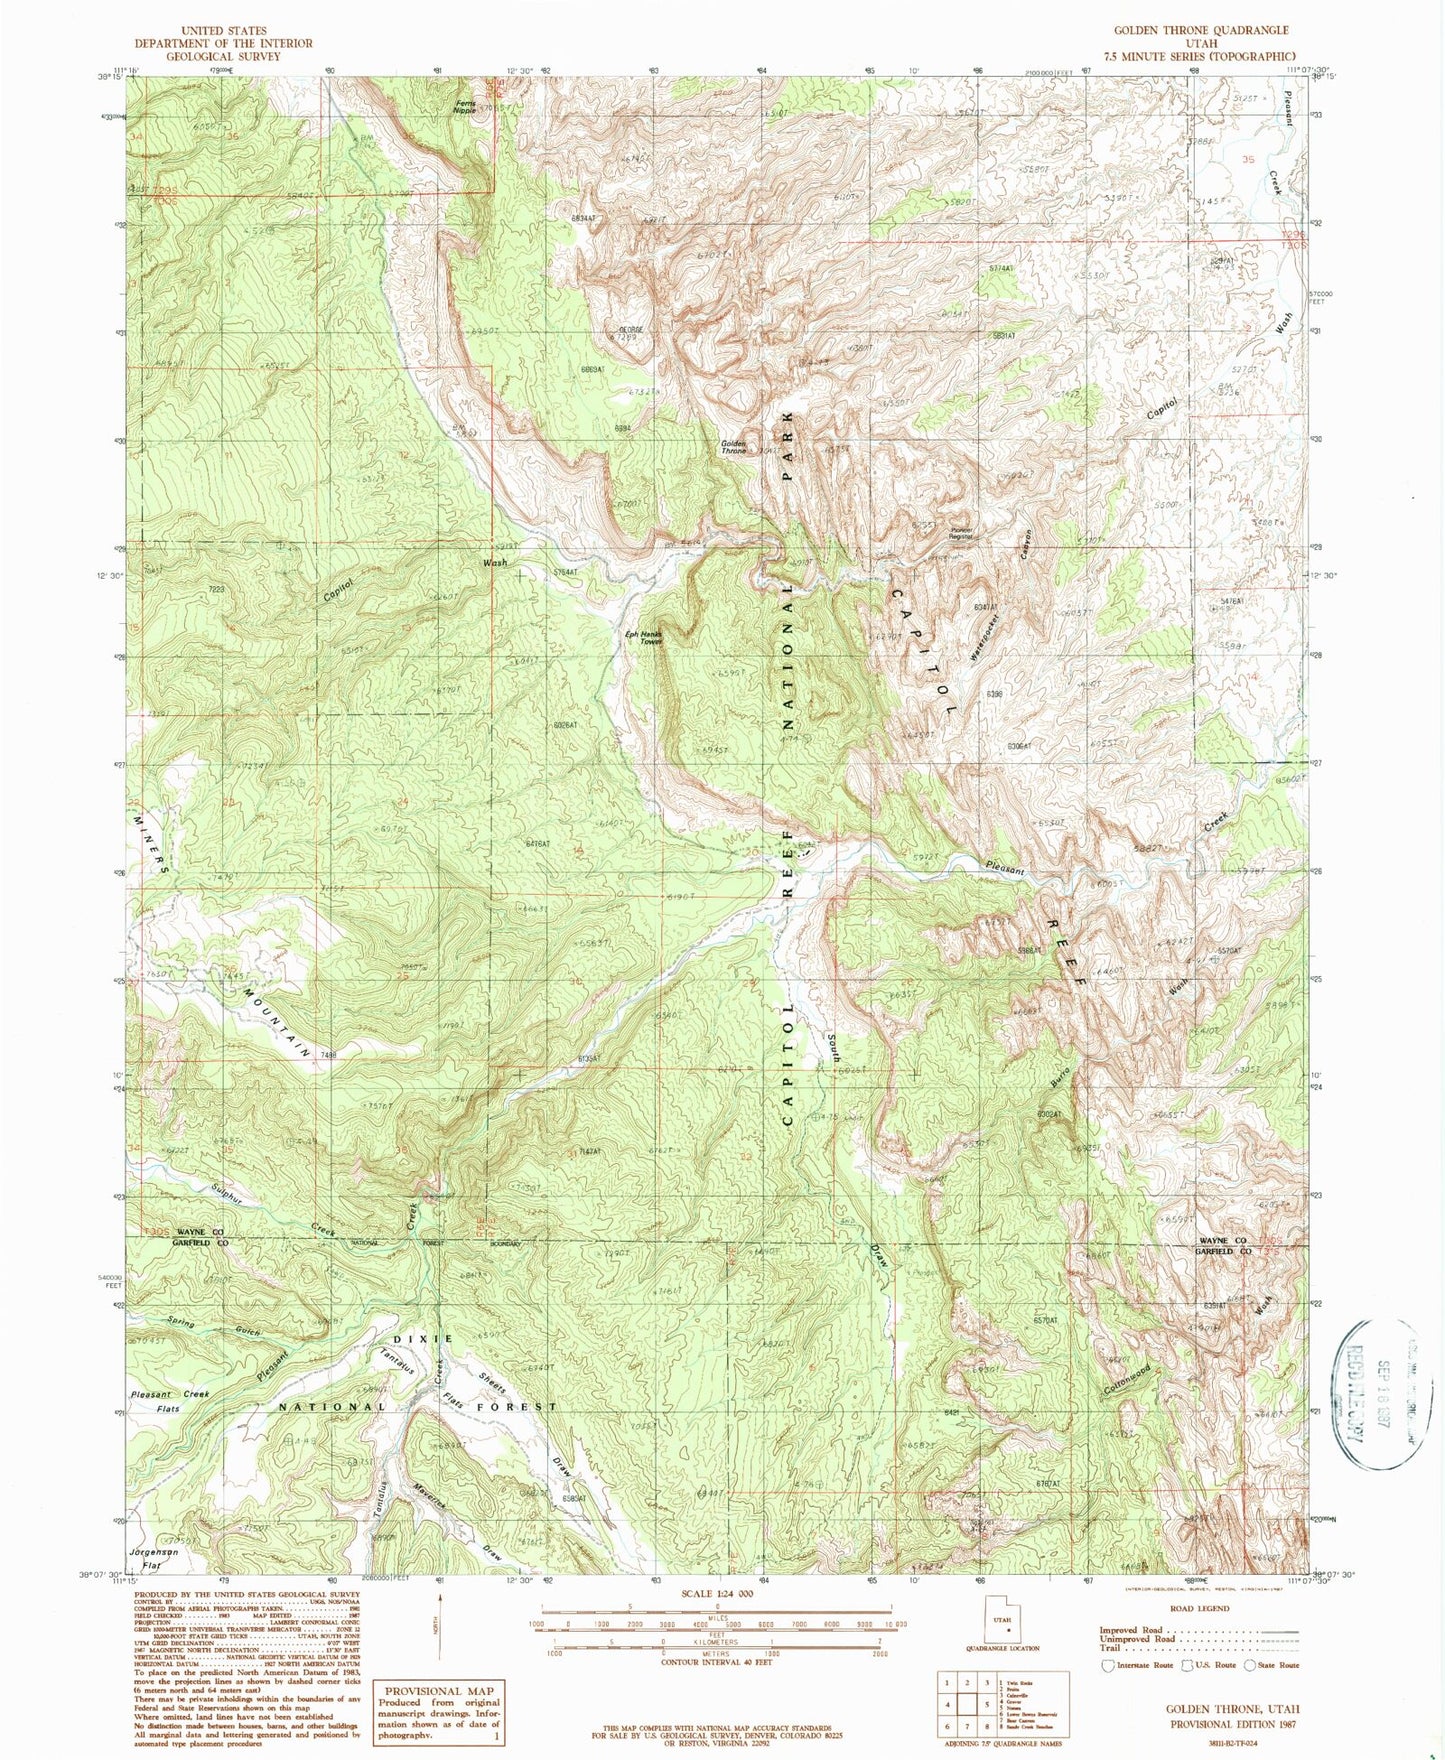 Classic USGS Golden Throne Utah 7.5'x7.5' Topo Map Image